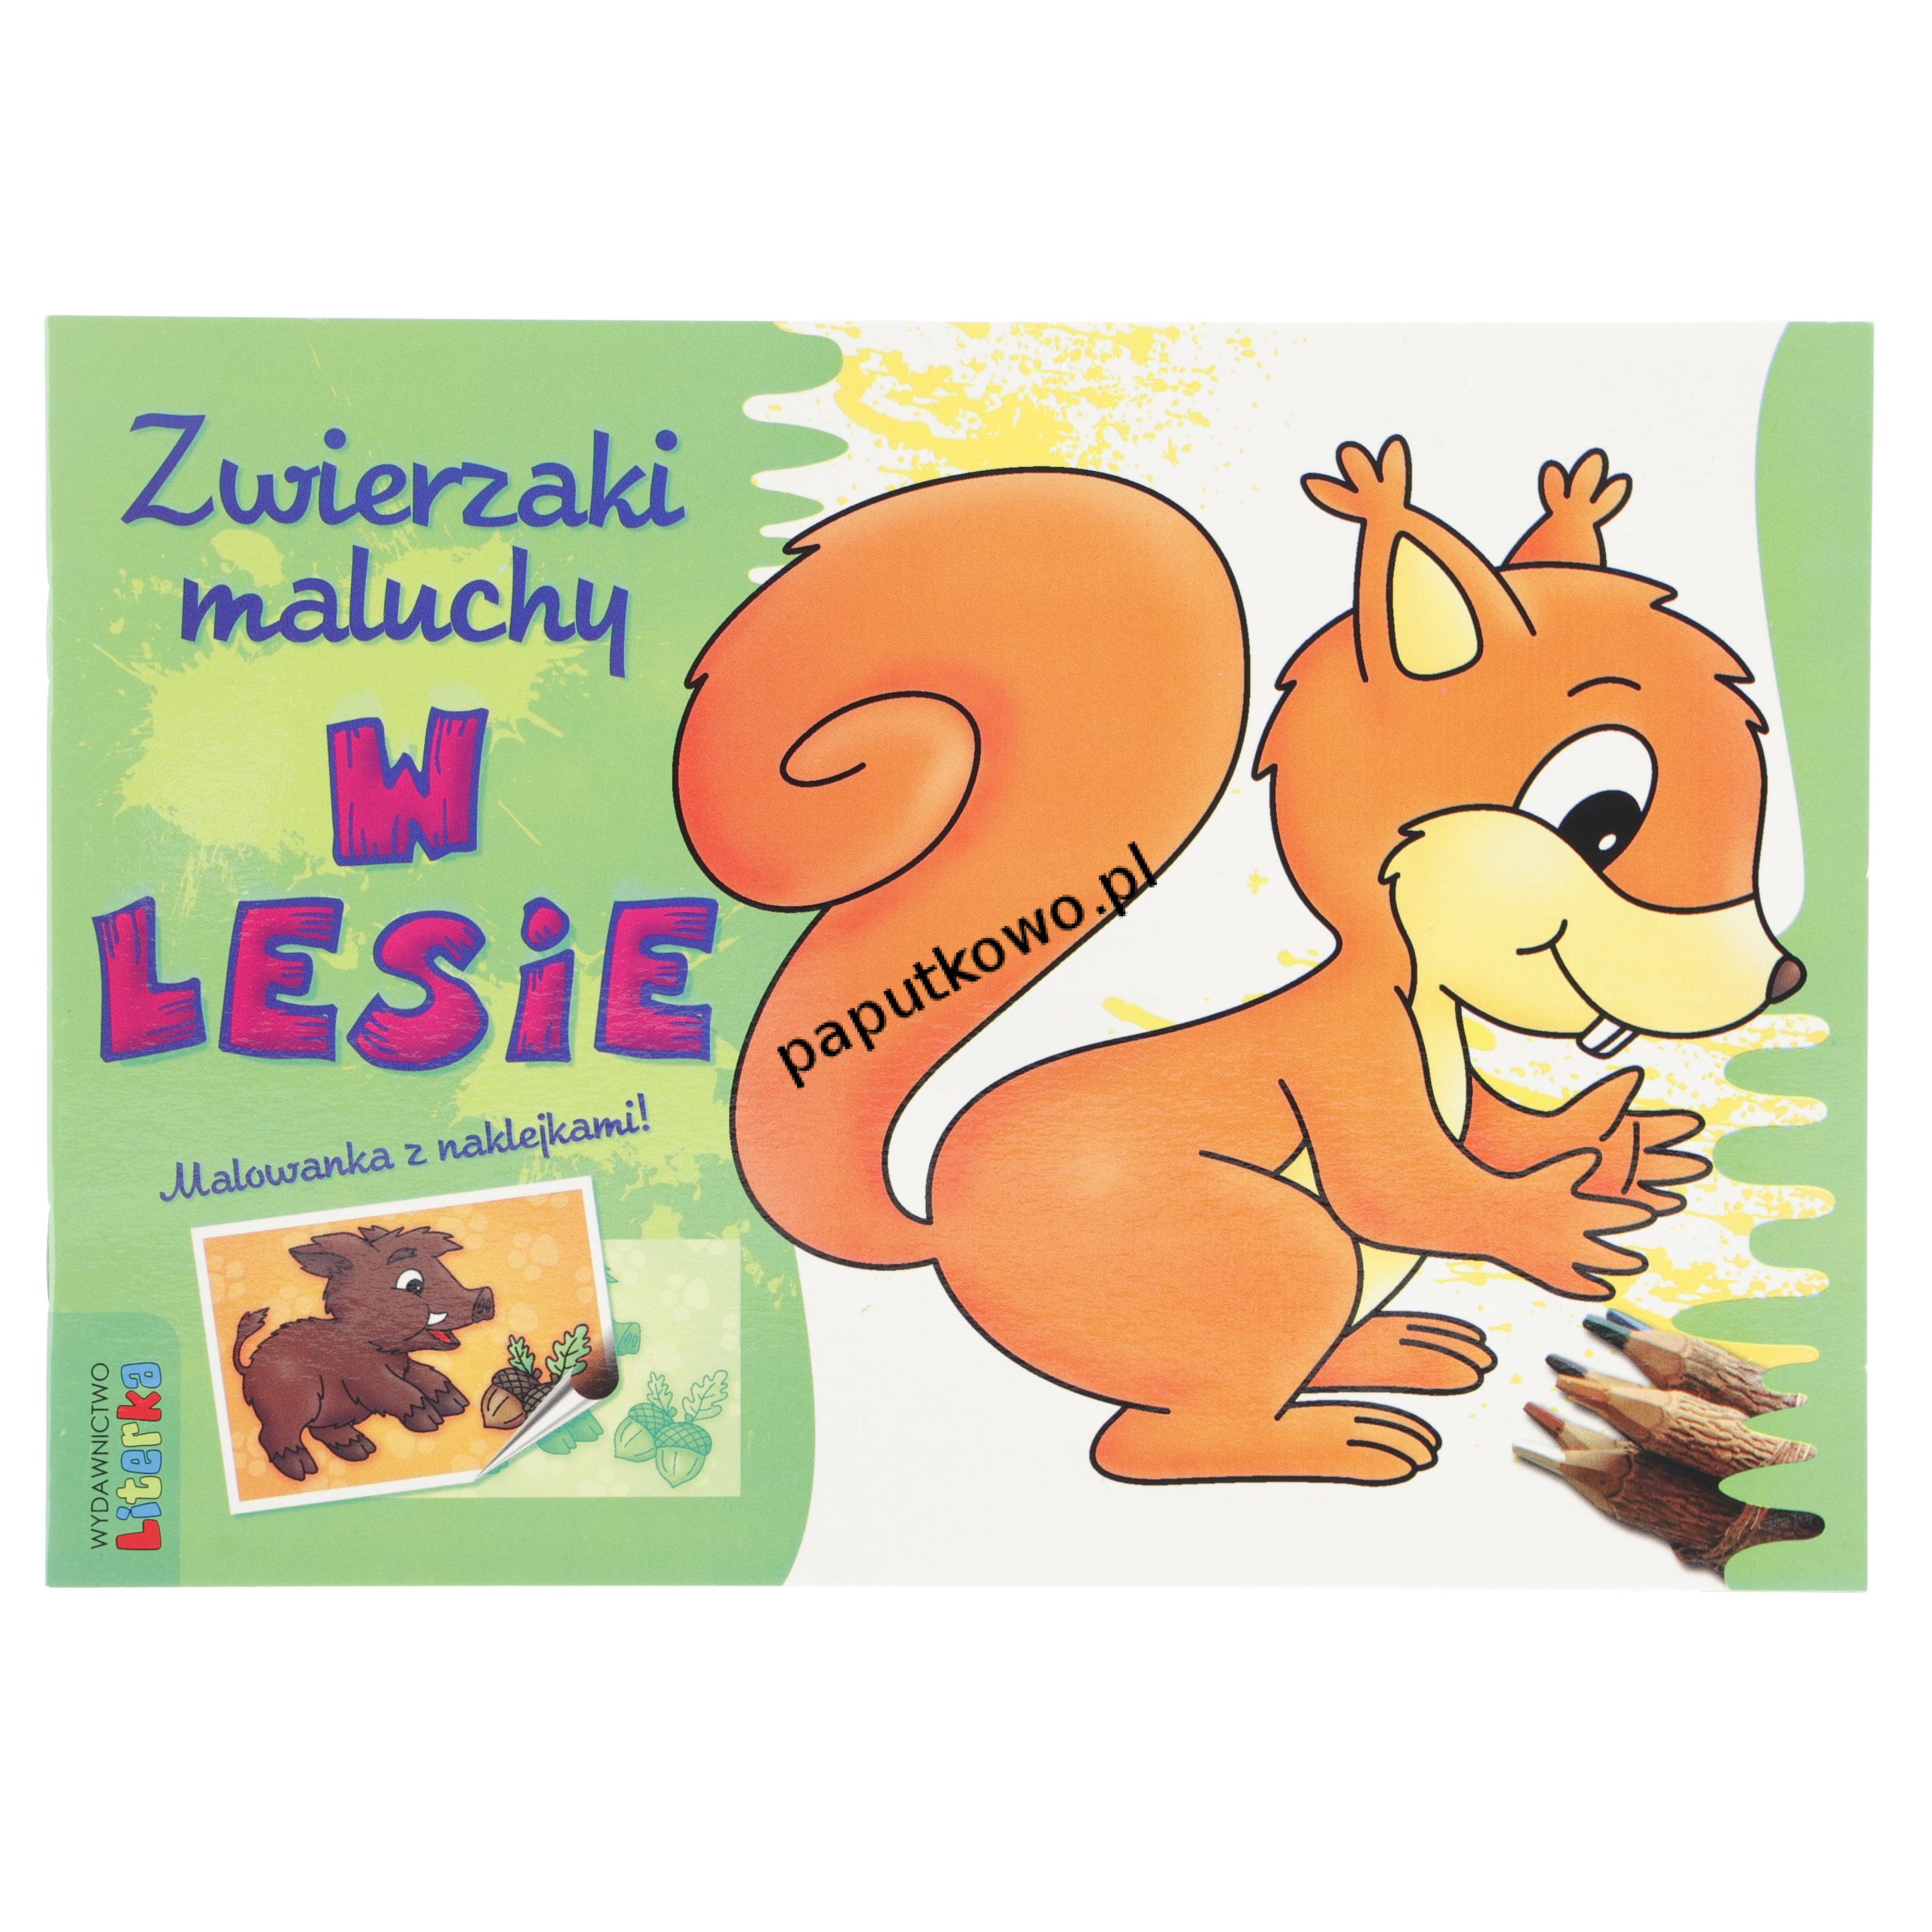 Książka dla dzieci Literka Zwierzaki maluchy - w LESIE